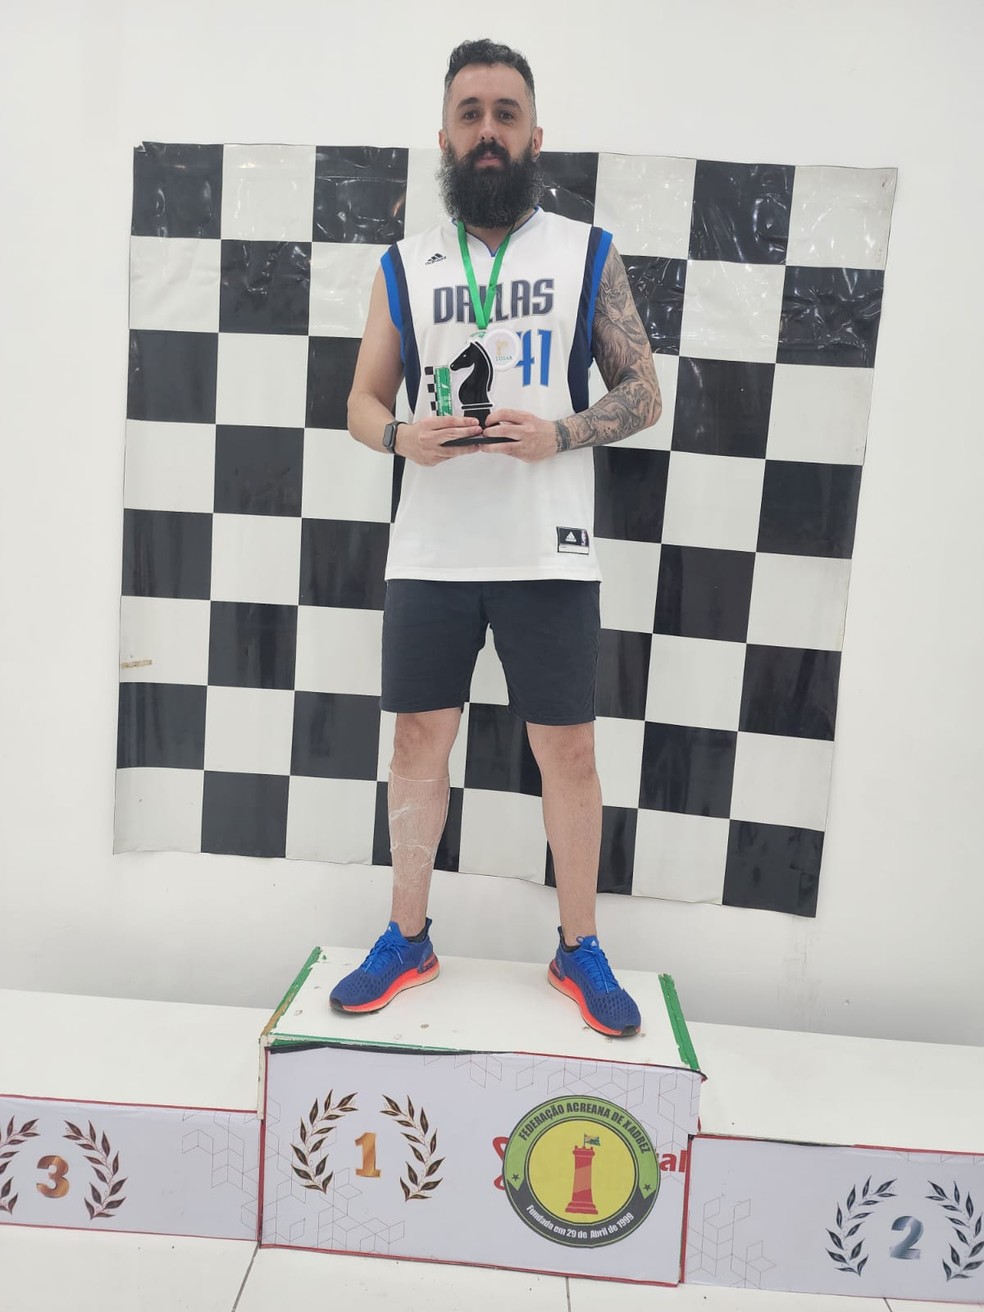 Henry da cidade de Patrocínio é campeão da Etapa Araxá do Circuito Minas  Gerais de Xadrez Rápido 2023 – Jornal Exempplar